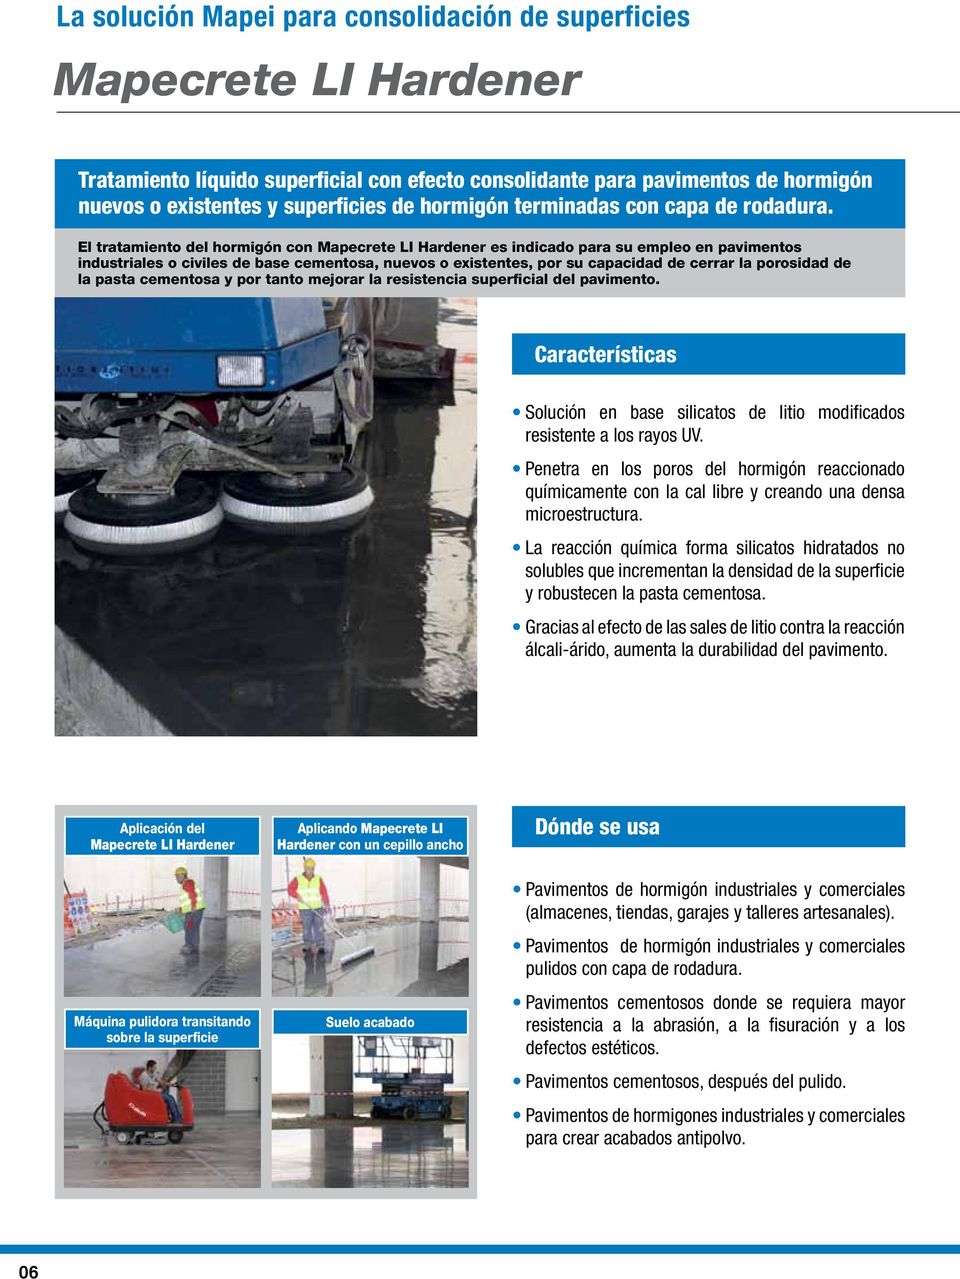 El tratamiento del hormigón con Mapecrete LI Hardener es indicado para su empleo en pavimentos industriales o civiles de base cementosa, nuevos o existentes, por su capacidad de cerrar la porosidad